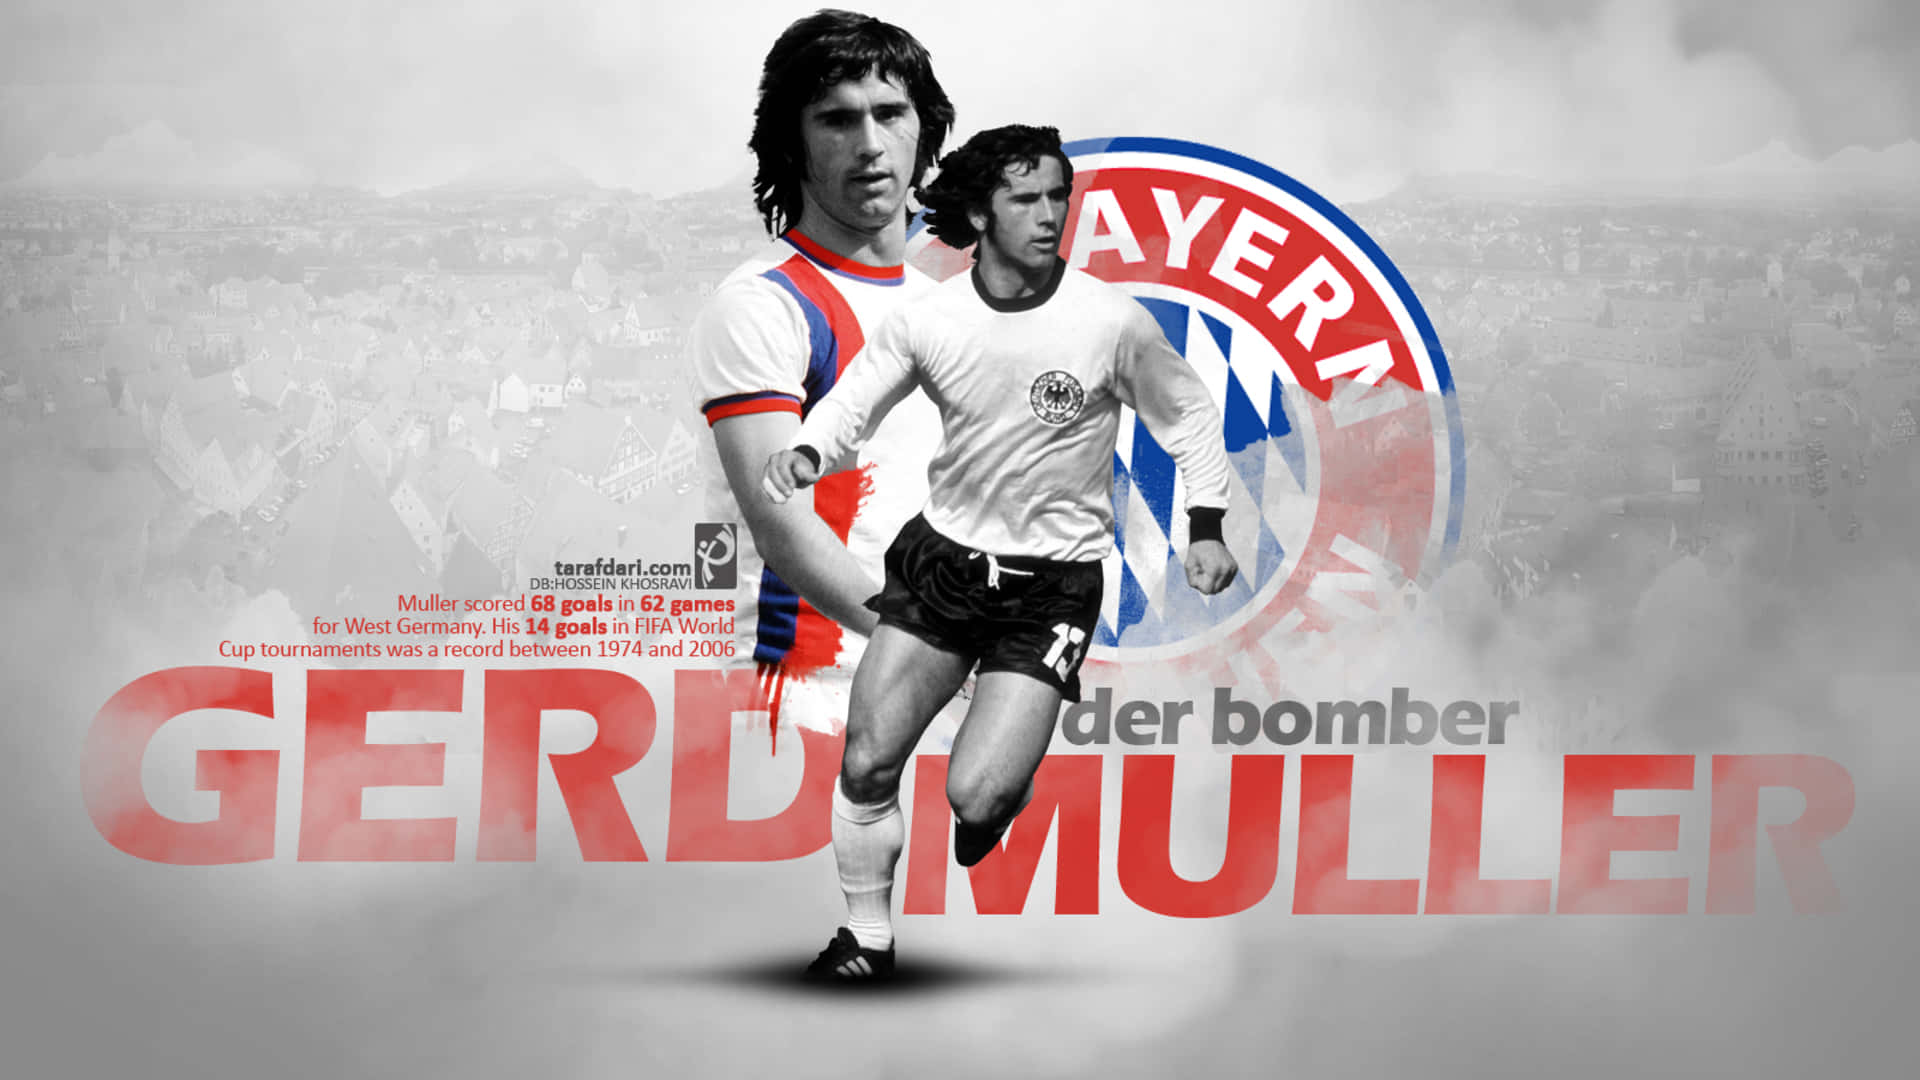 Gerd Muller Bayern Munich Poster Wallpaper